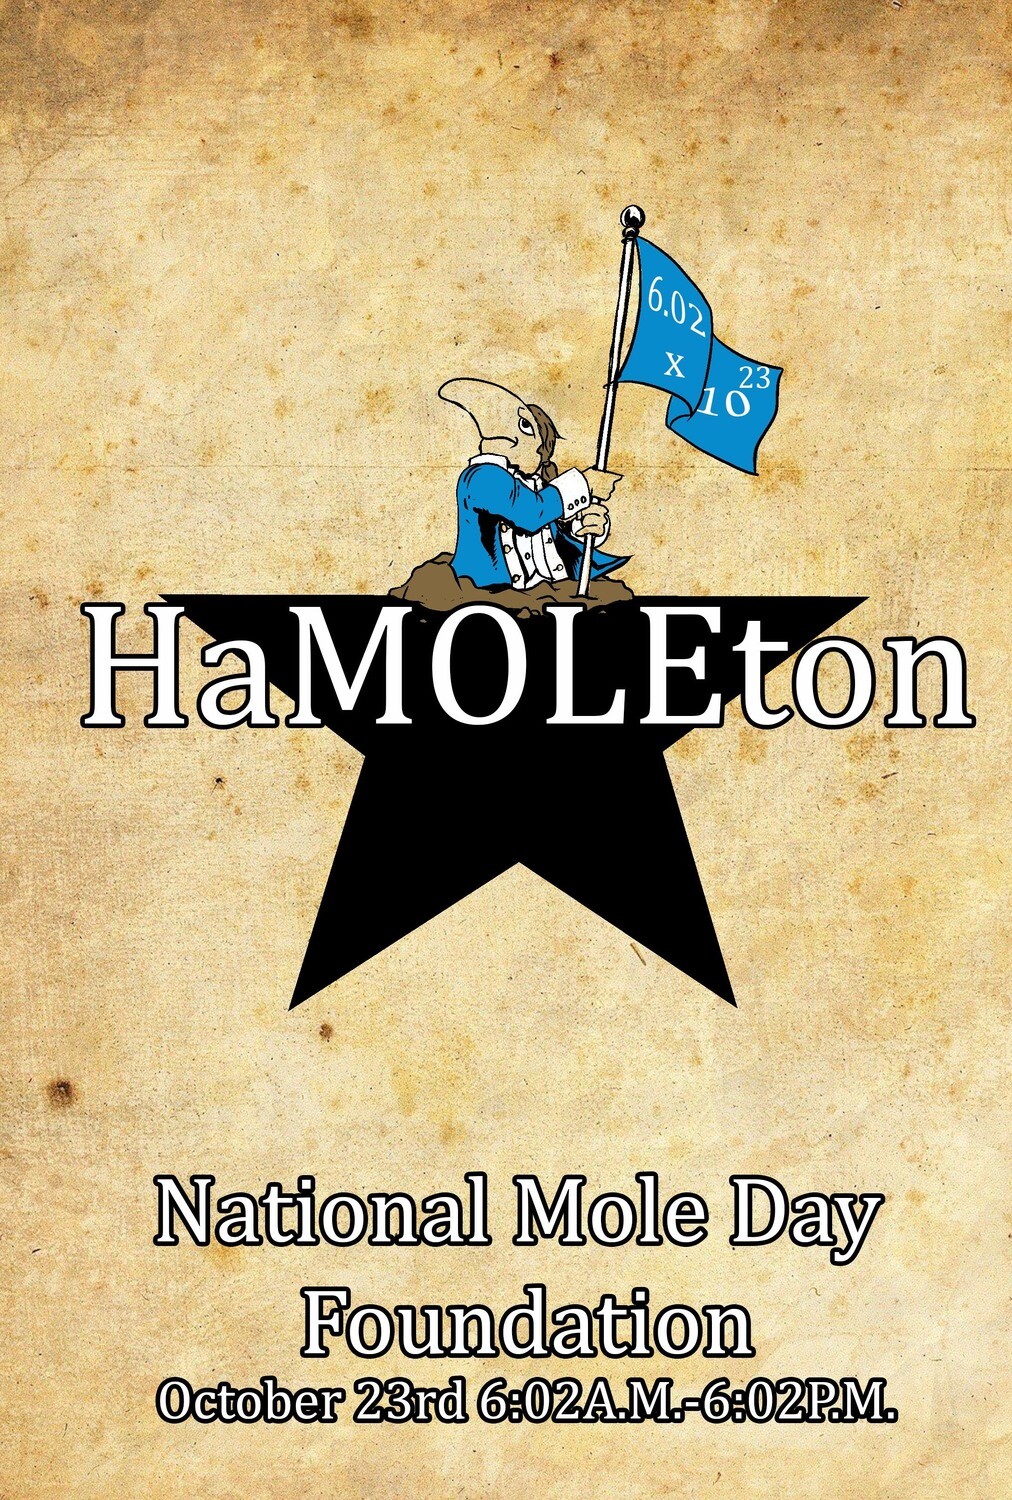 HaMOLEton Image in Color